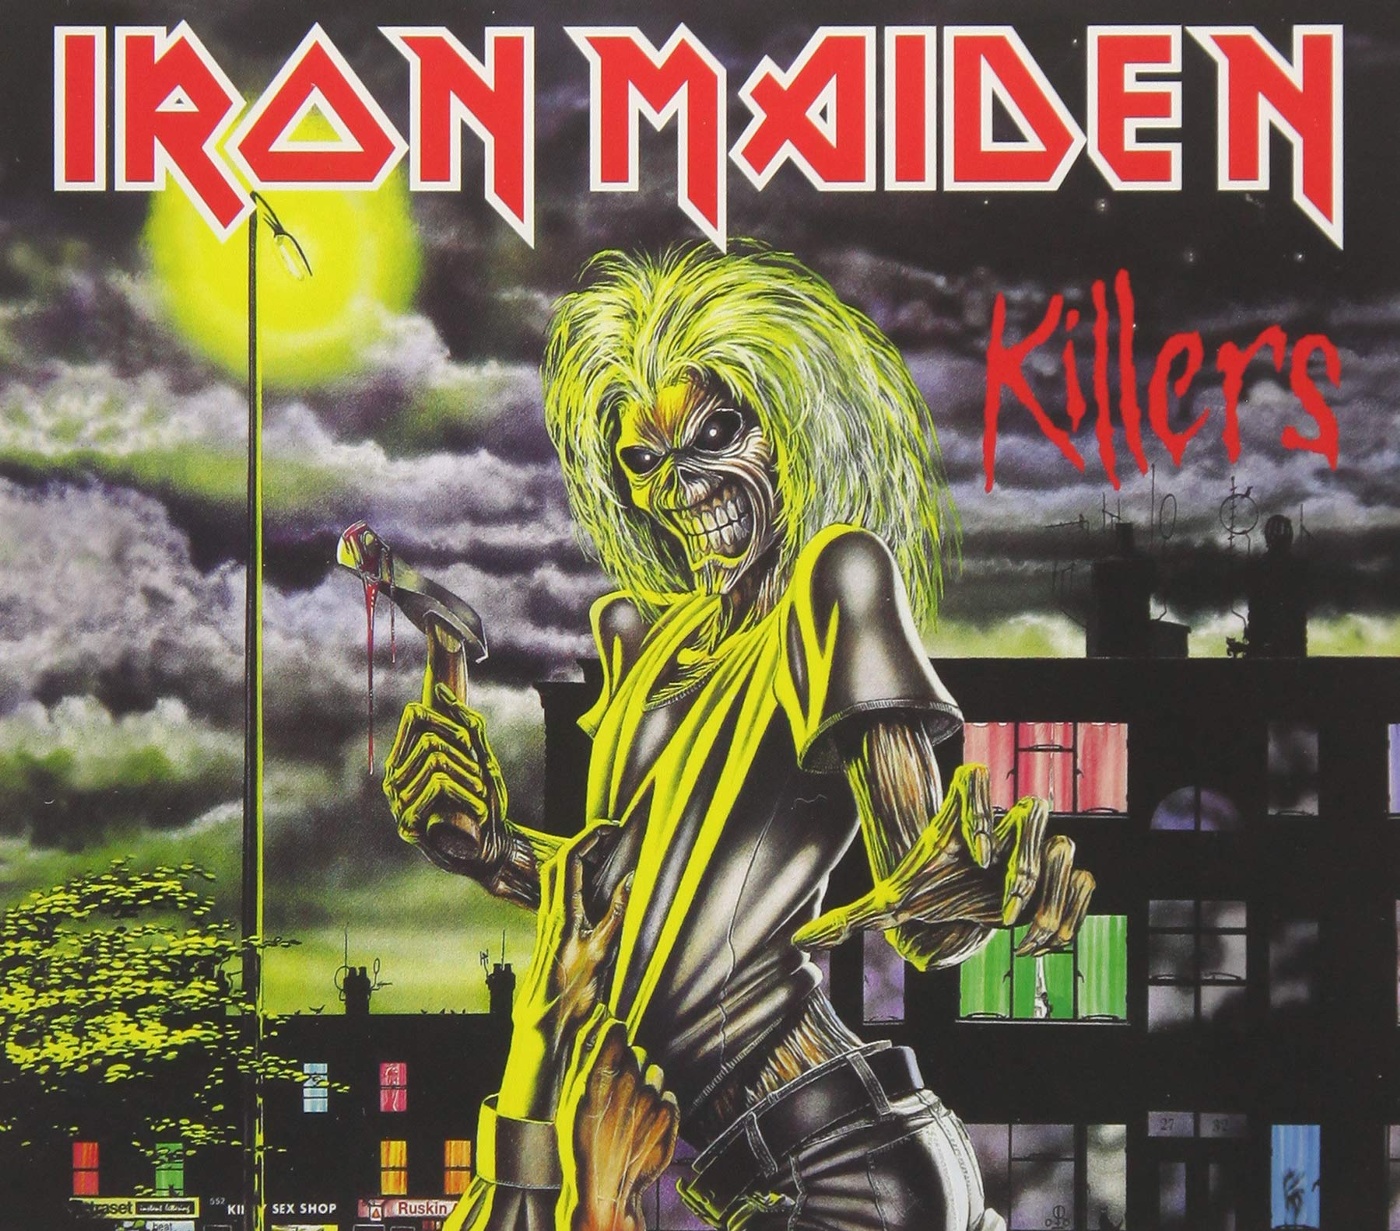 Killers обложка. Iron Maiden 1981. Iron Maiden "Killers". Айрон мейден 1981. Айрон мейден альбомы.